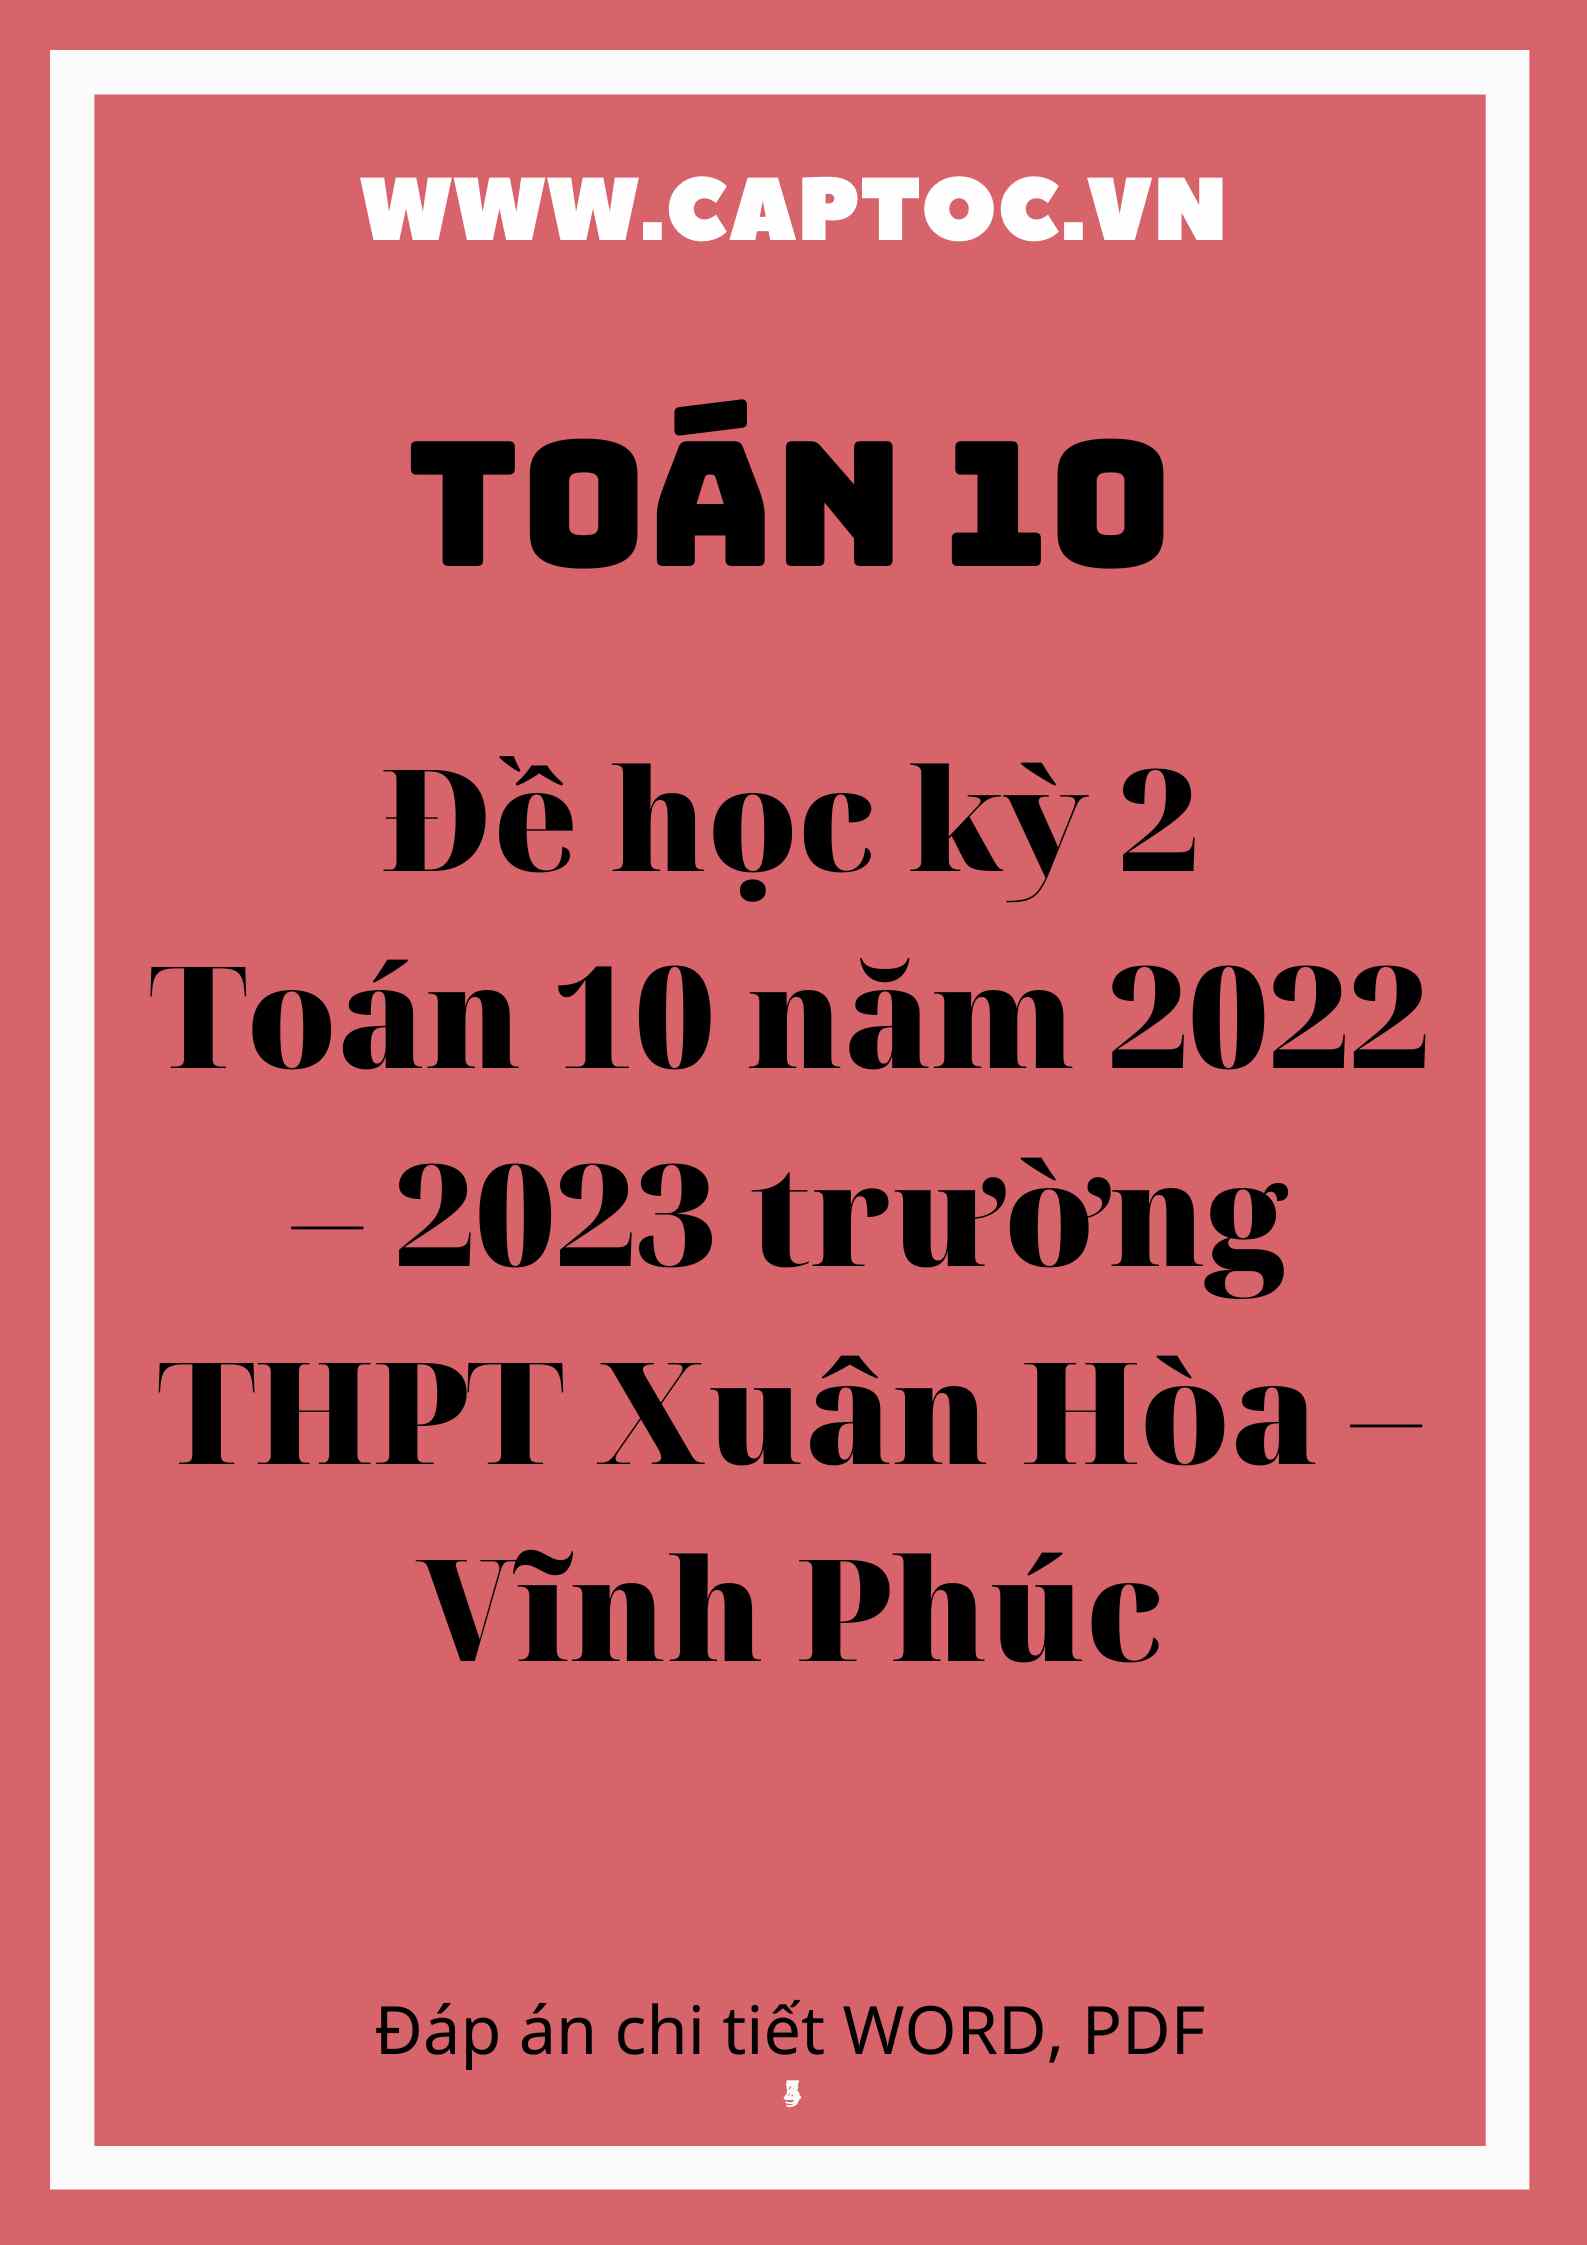 Đề học kỳ 2 Toán 10 năm 2022 – 2023 trường THPT Xuân Hòa – Vĩnh Phúc